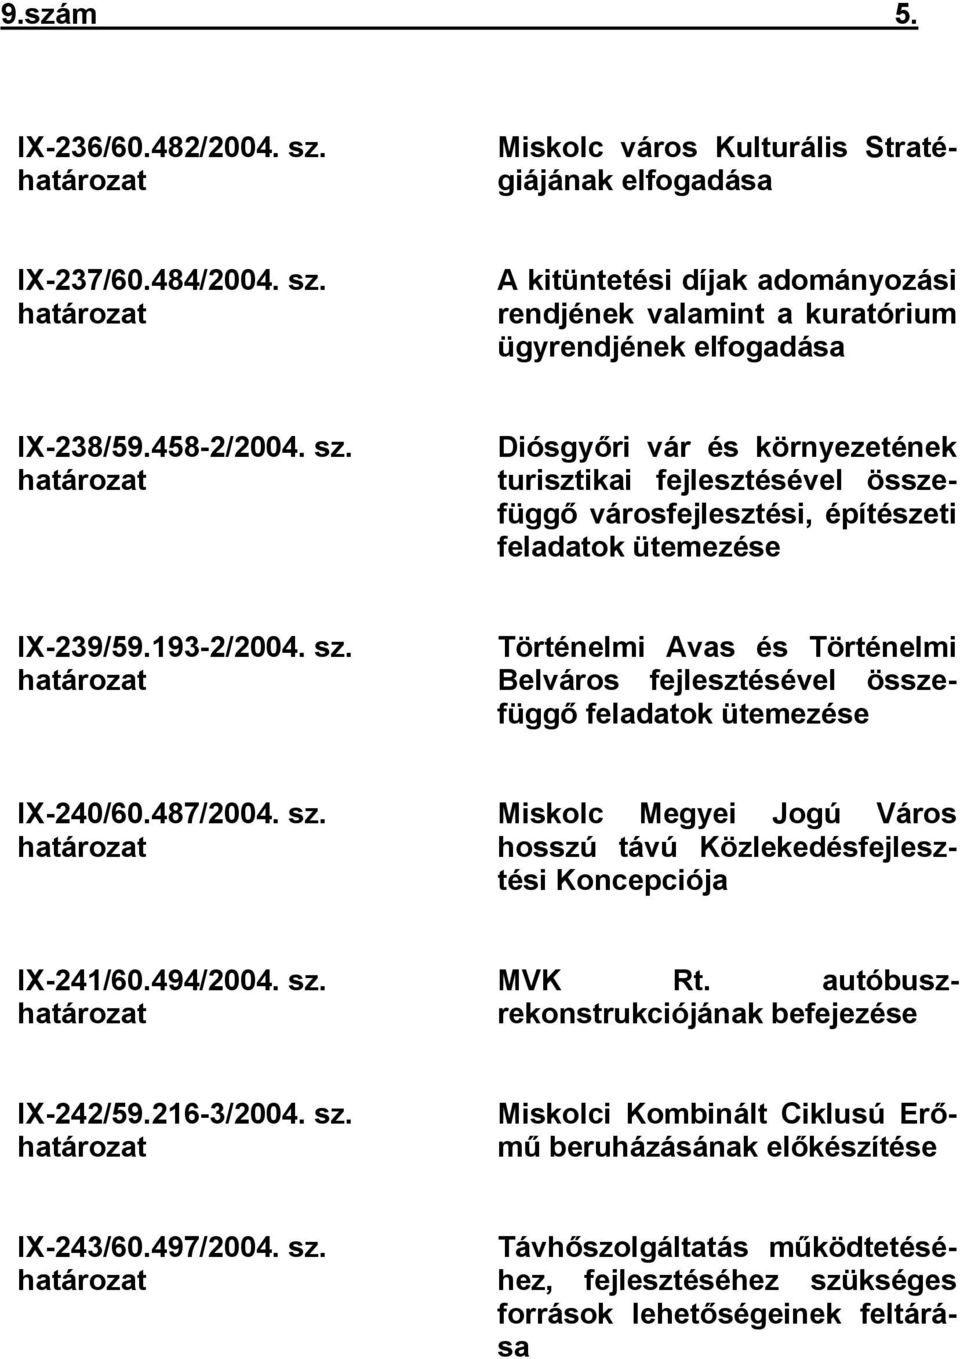 487/2004. sz. határozat Miskolc Megyei Jogú Város hosszú távú Közlekedésfejlesztési Koncepciója IX-241/60.494/2004. sz. határozat MVK Rt. autóbuszrekonstrukciójának befejezése IX-242/59.216-3/2004.